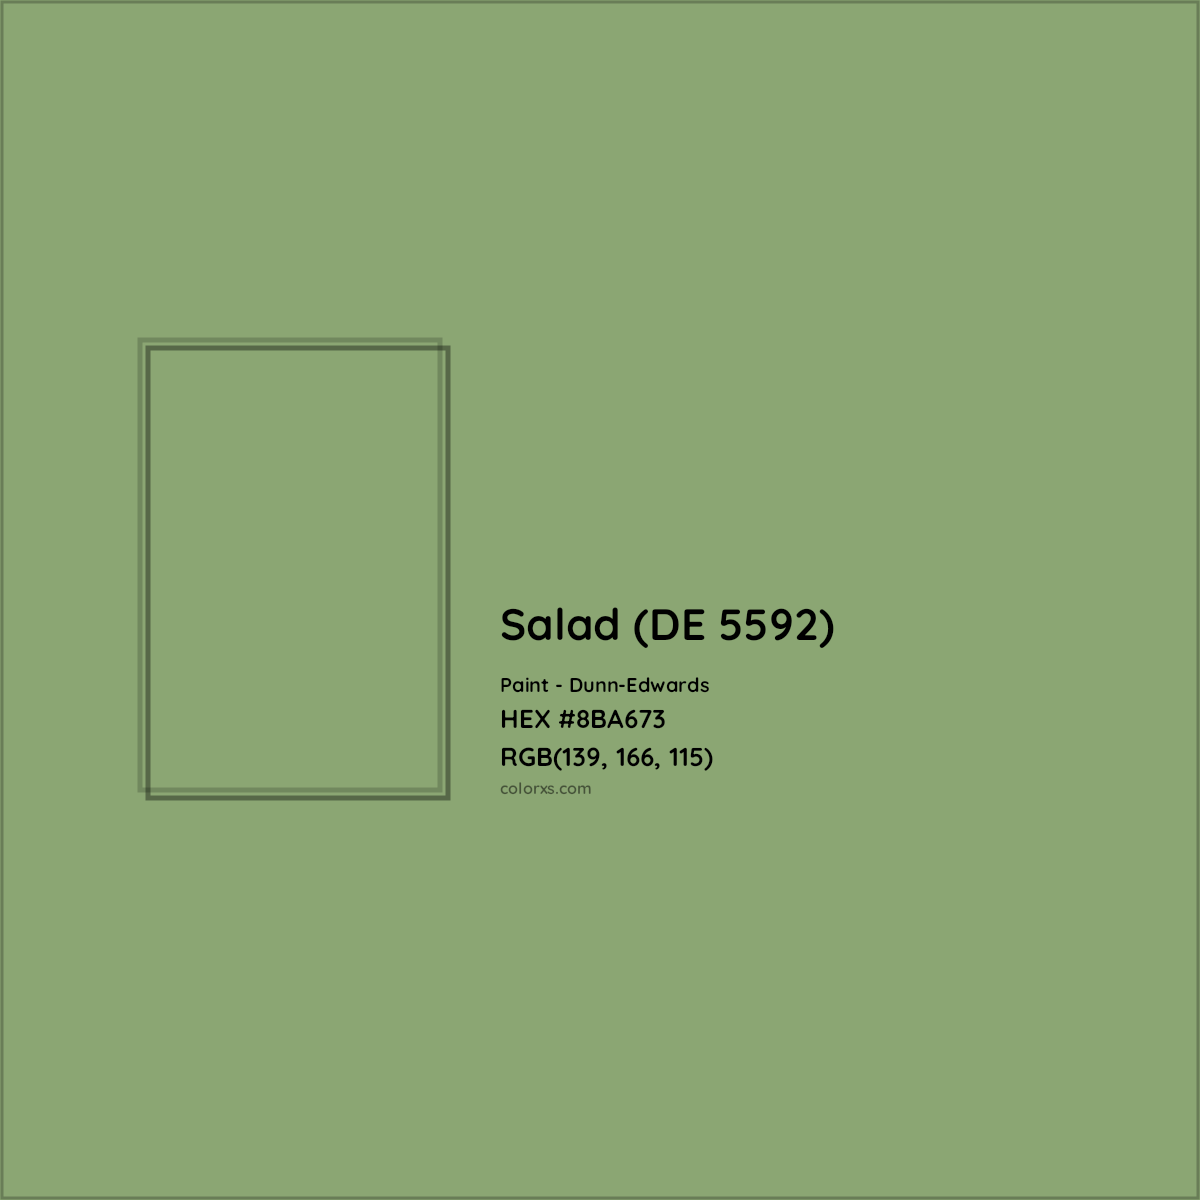 HEX #8BA673 Salad (DE 5592) Paint Dunn-Edwards - Color Code